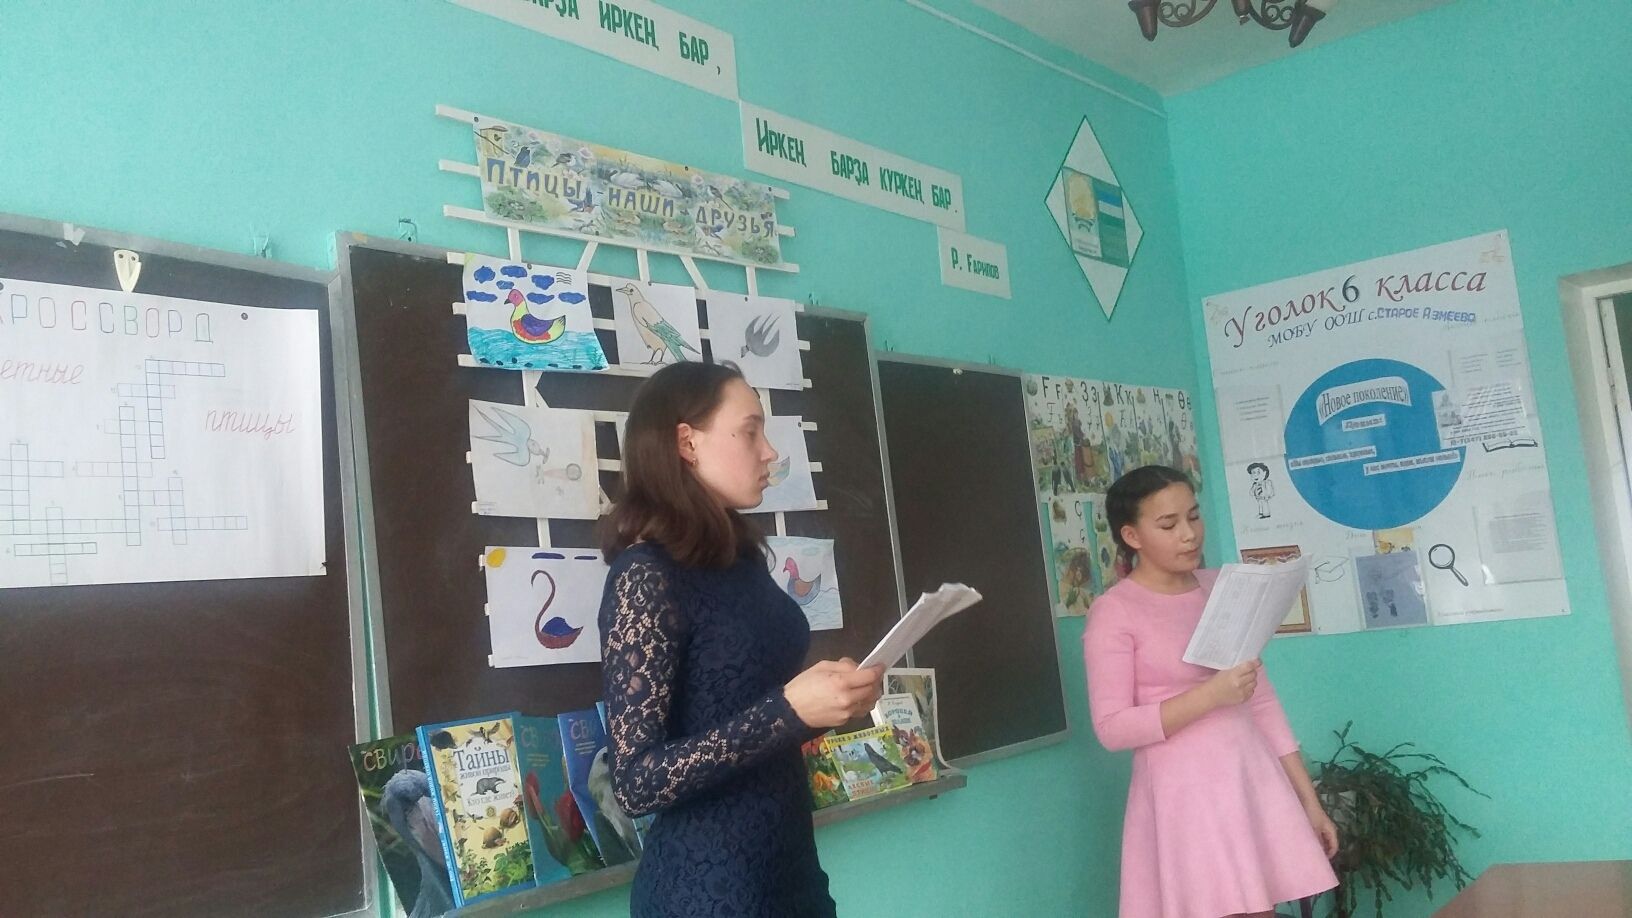 Отец Владимир рассказал школьникам об охране птиц ФОТО